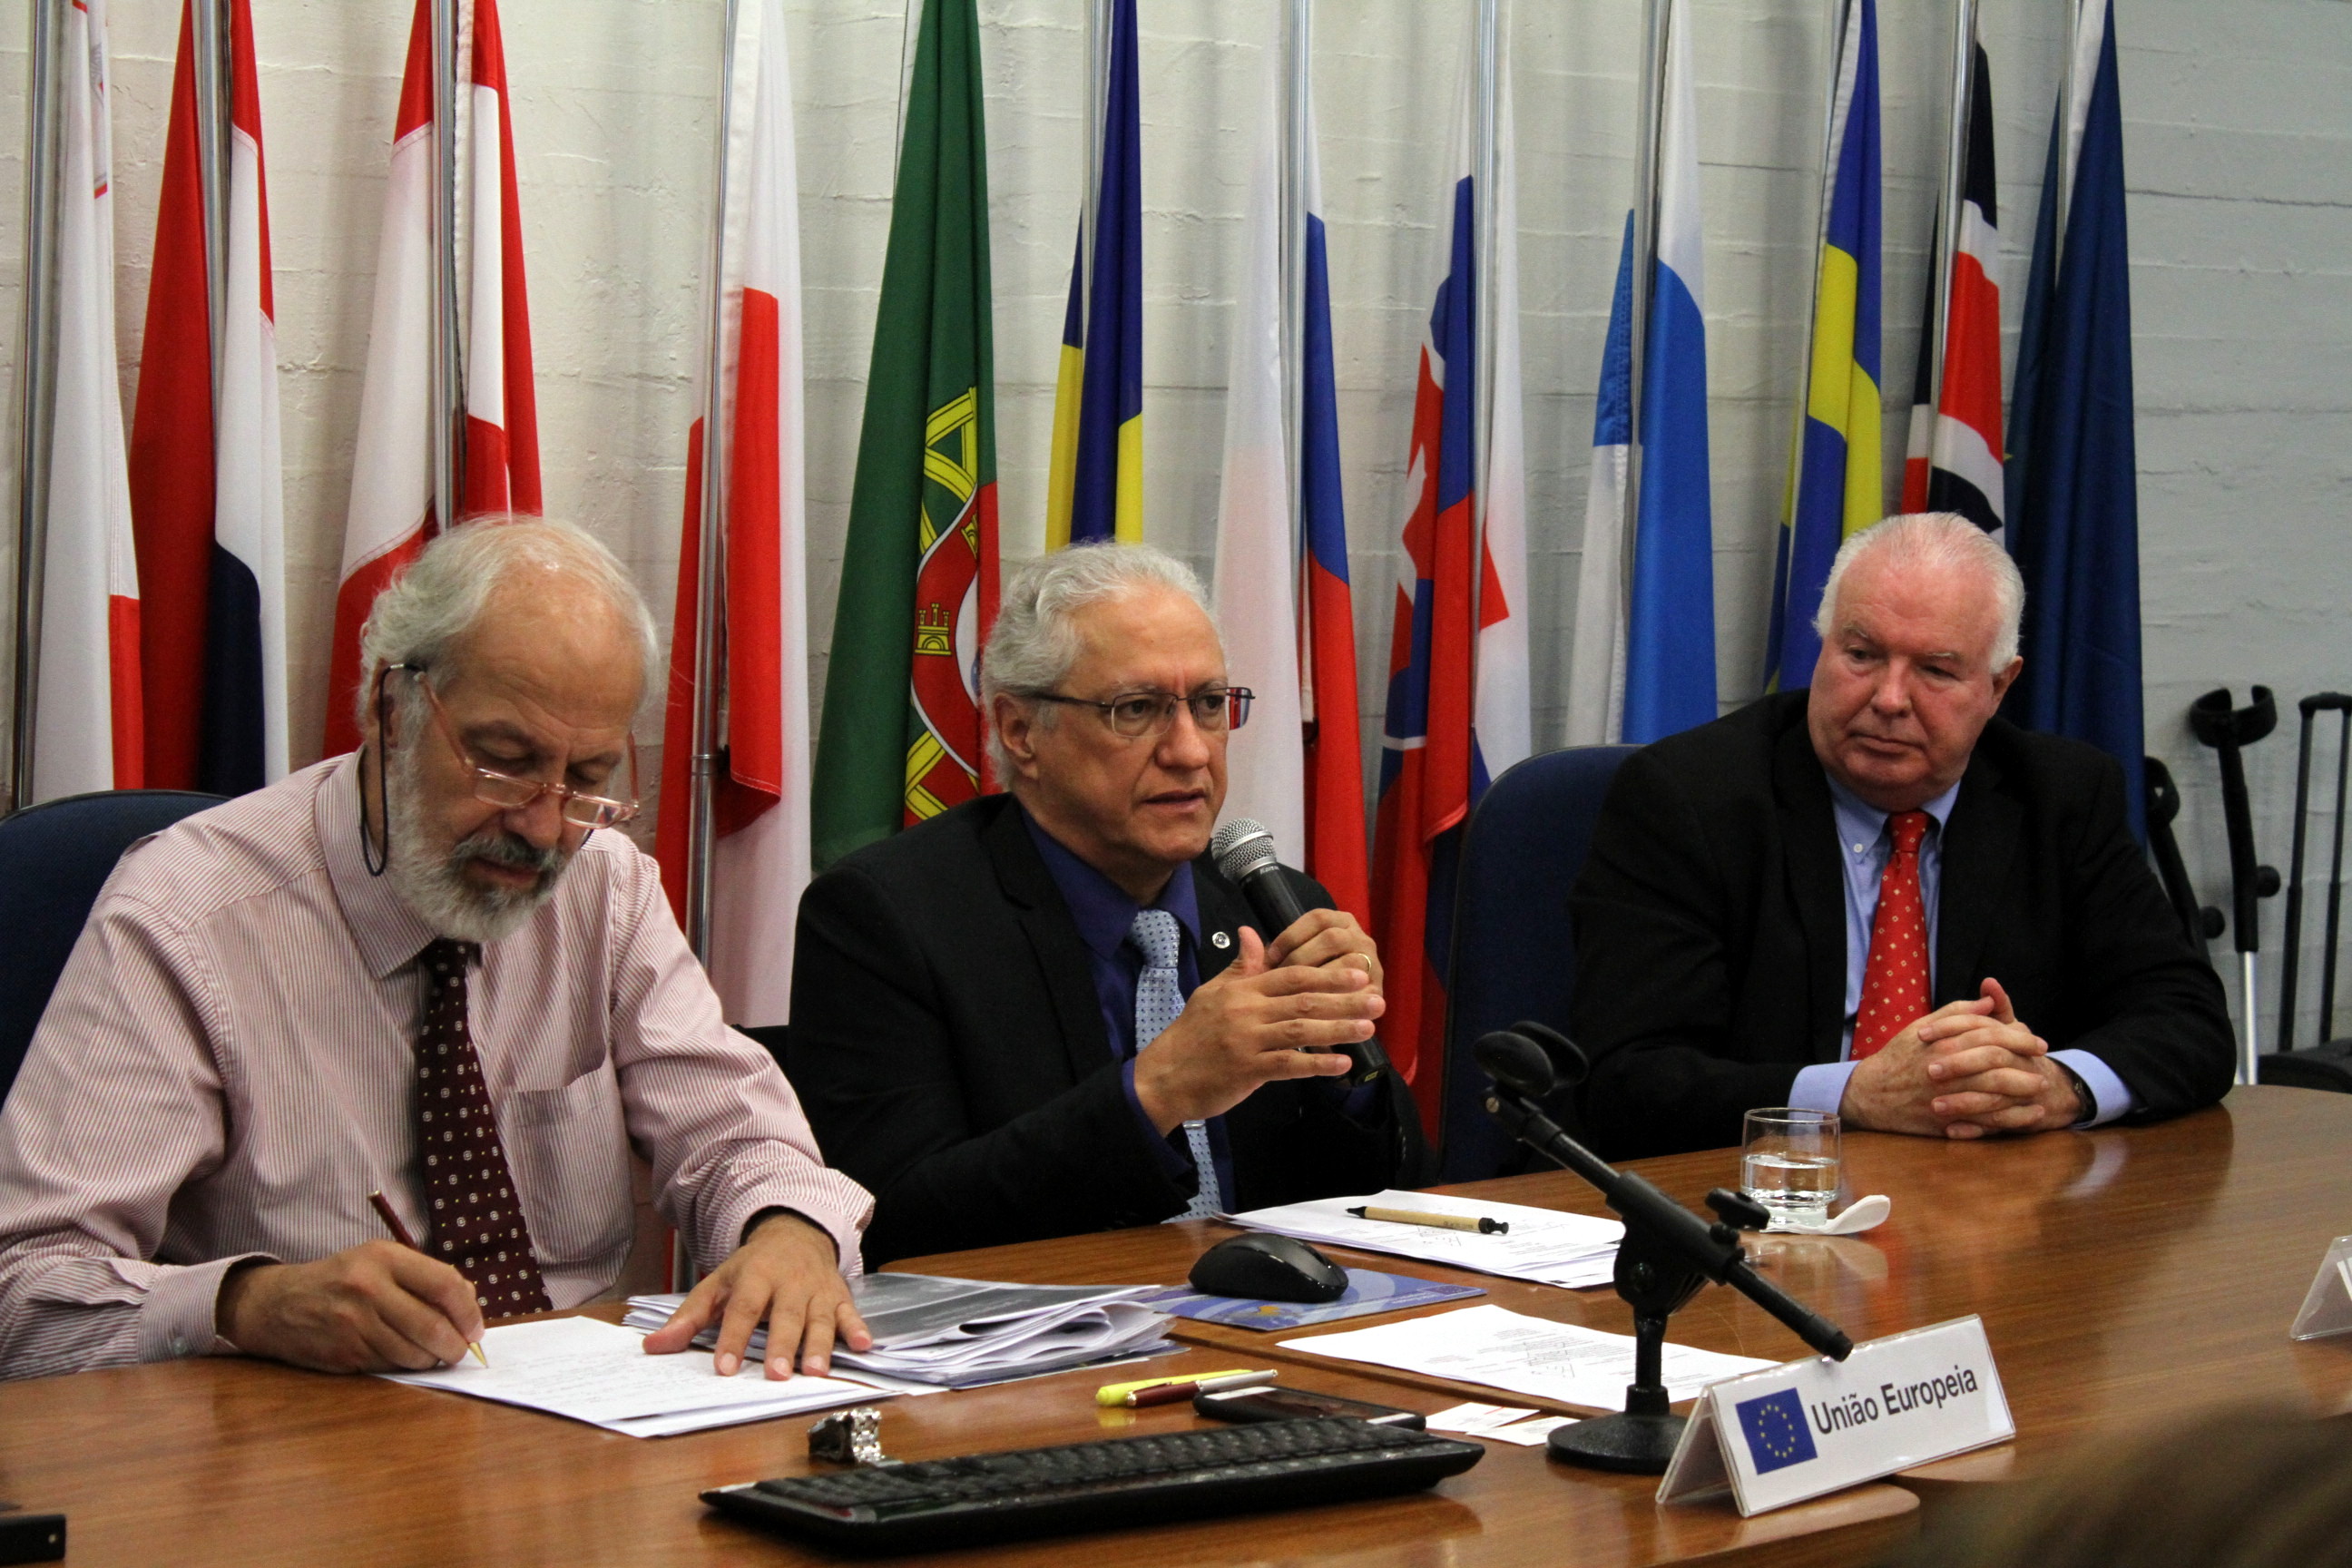  Palestra na reunião de Conselheiros de Ciência, Tecnologia e Inovação dos países membros da União Europeia - Fotos Marcelo Gondim